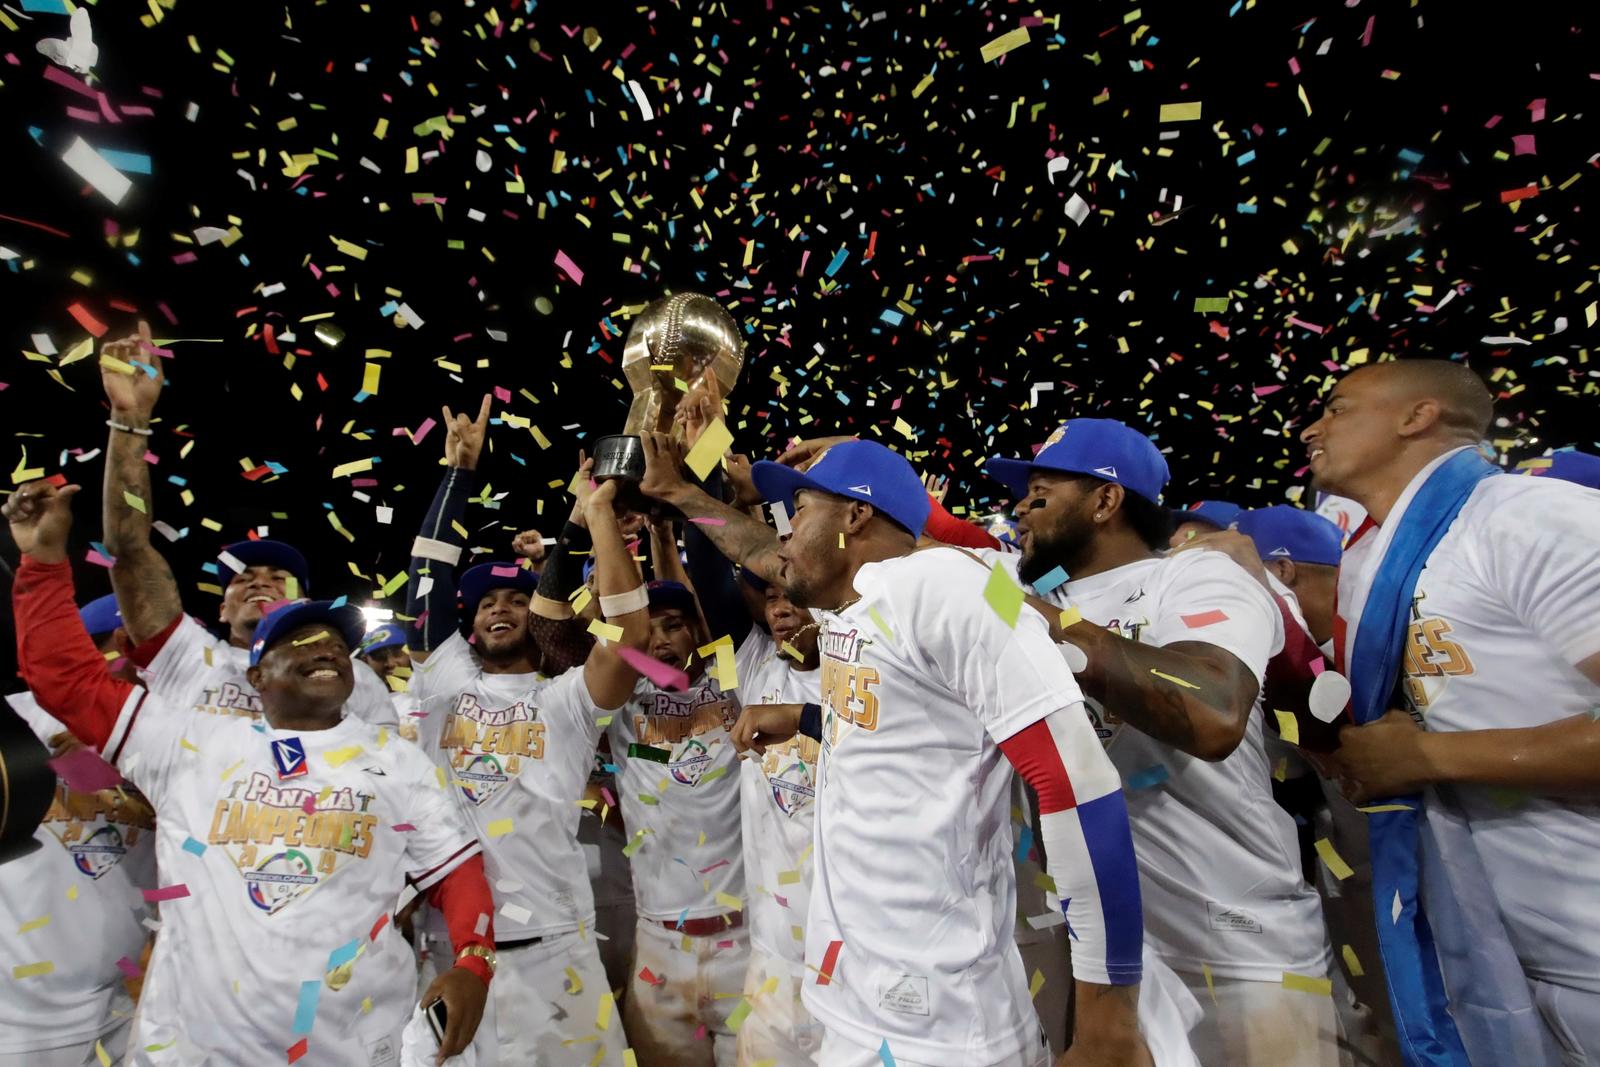 Panamá derrotó en casa 3-1 a Cuba en la final de la Serie del Caribe, para llevarse el título, algo que no lograban desde 1950.